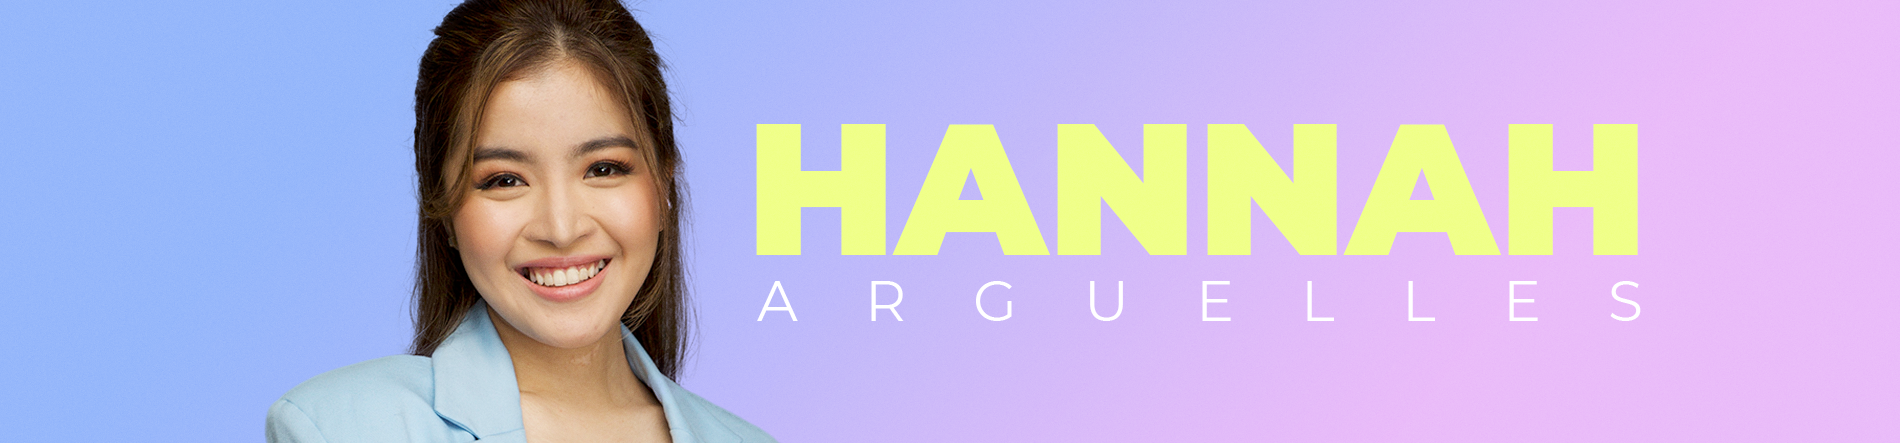 Hannah Arguelles Desktop Banner